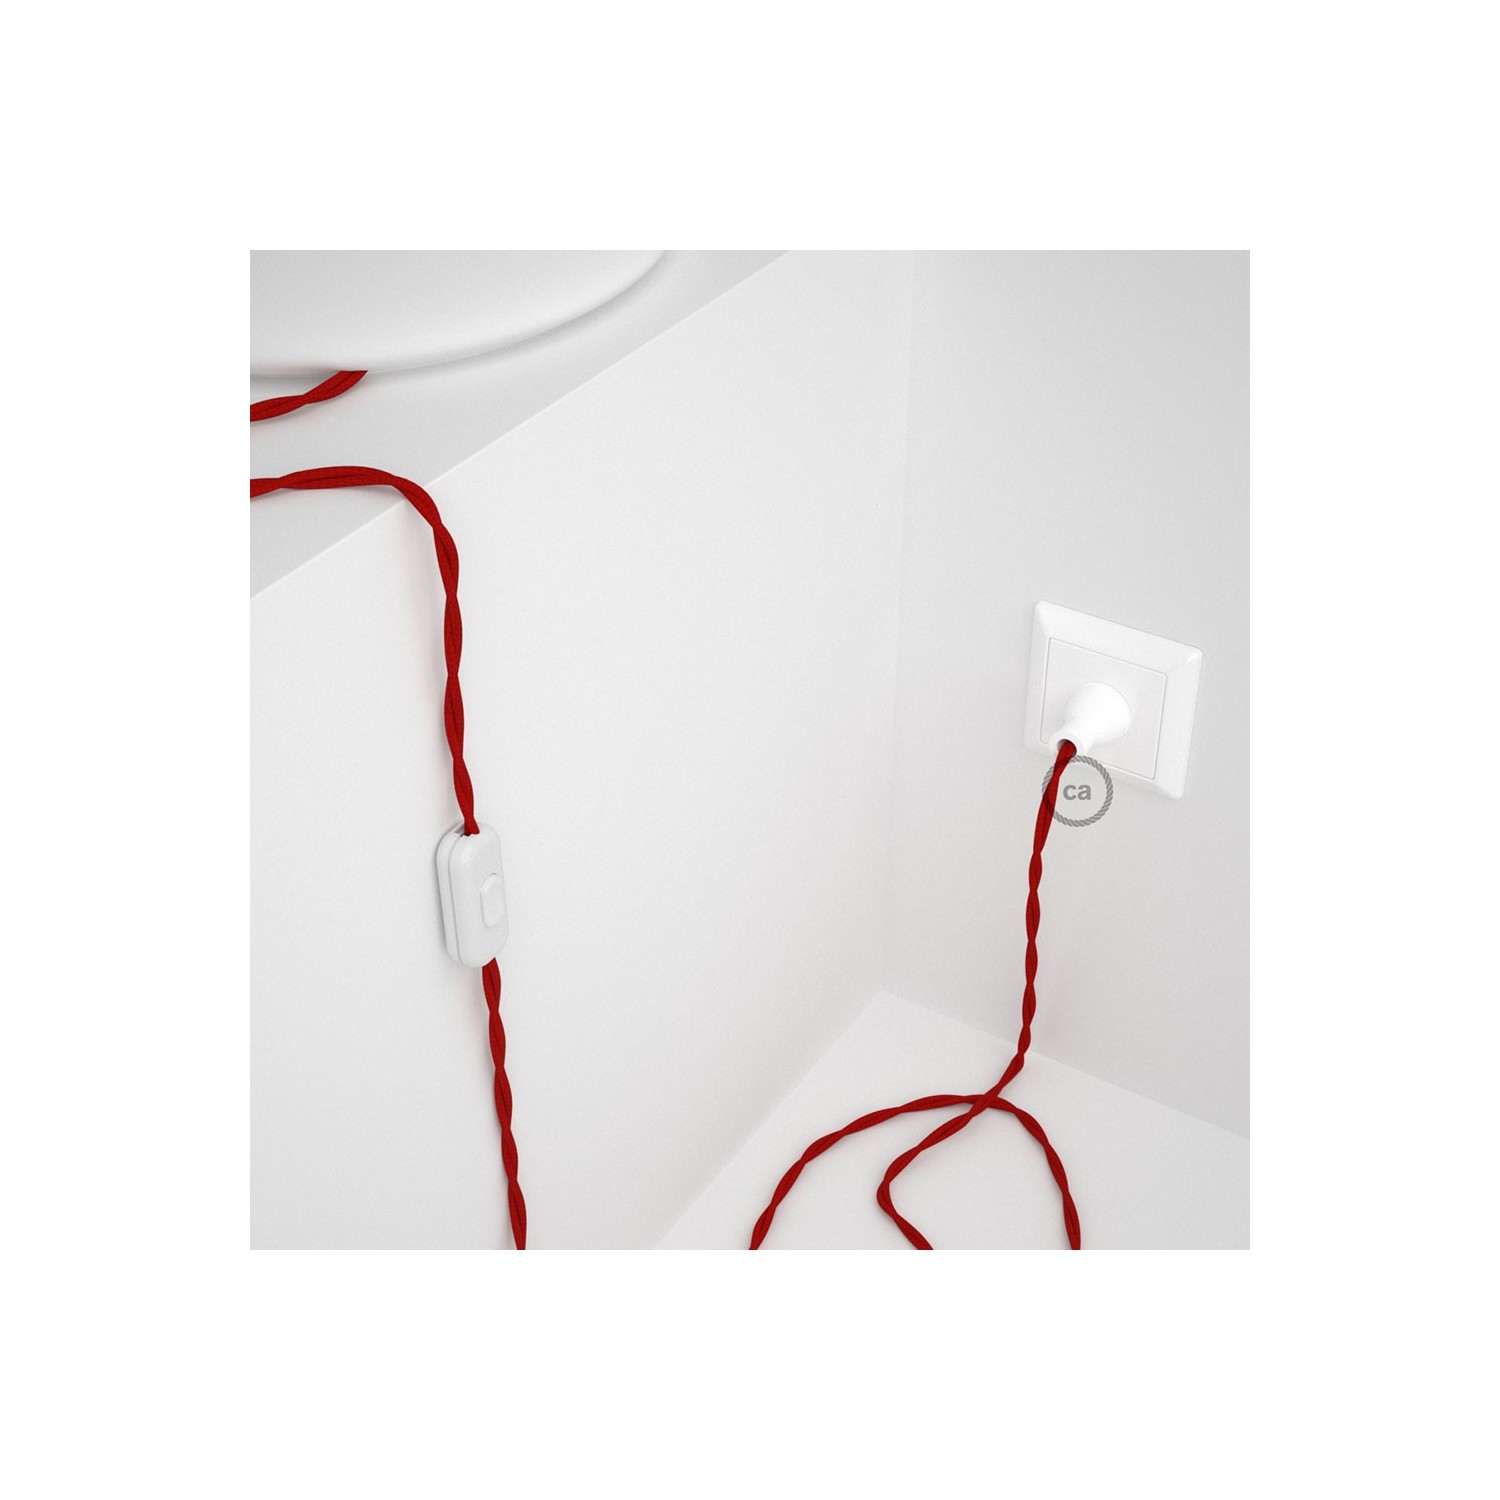 Cableado para lámpara de mesa, cable TM09 Rayón Rojo 1,8 m. Elige el color de la clavija y del interruptor!